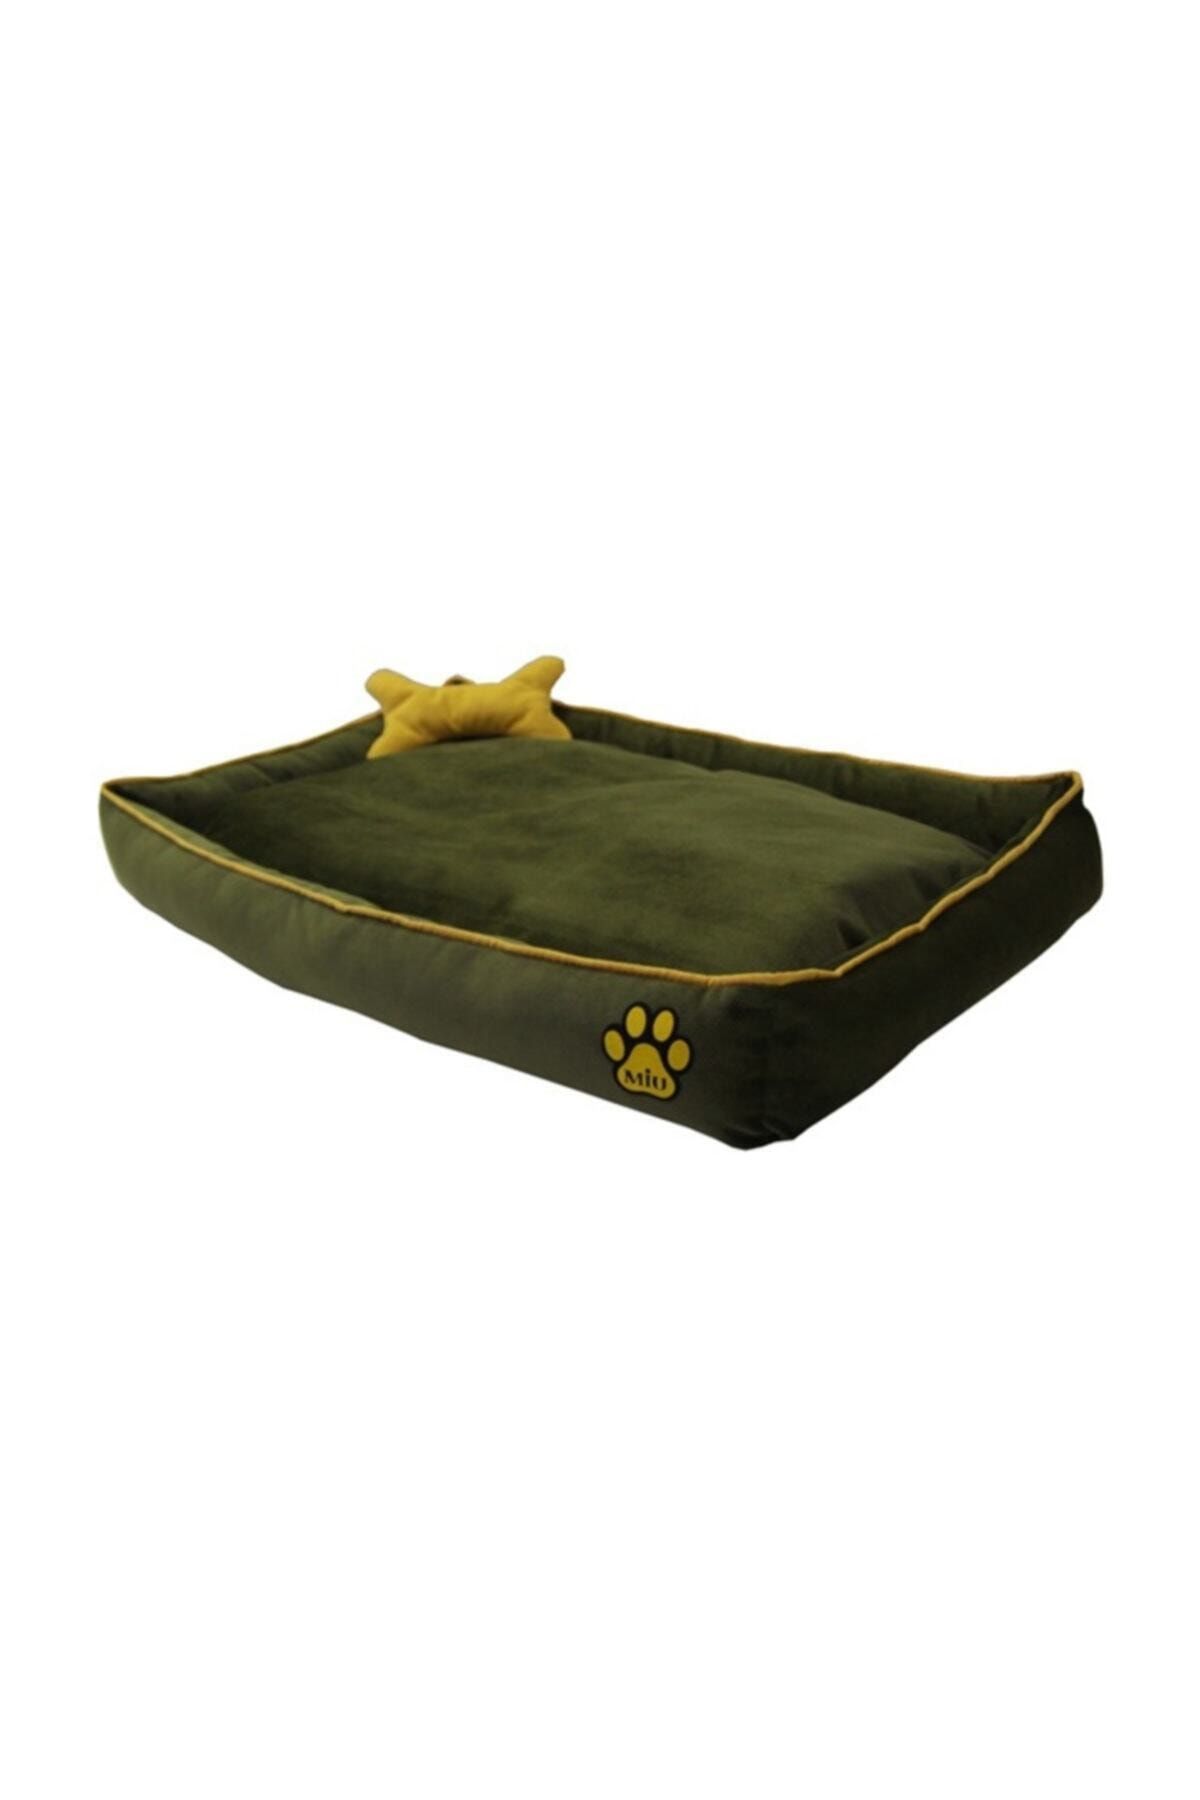 Miu Miu Miu Tay Tüyü Köpek Yatağı Kemik Yastıklı 10*40*60 Cm Yeşil Small